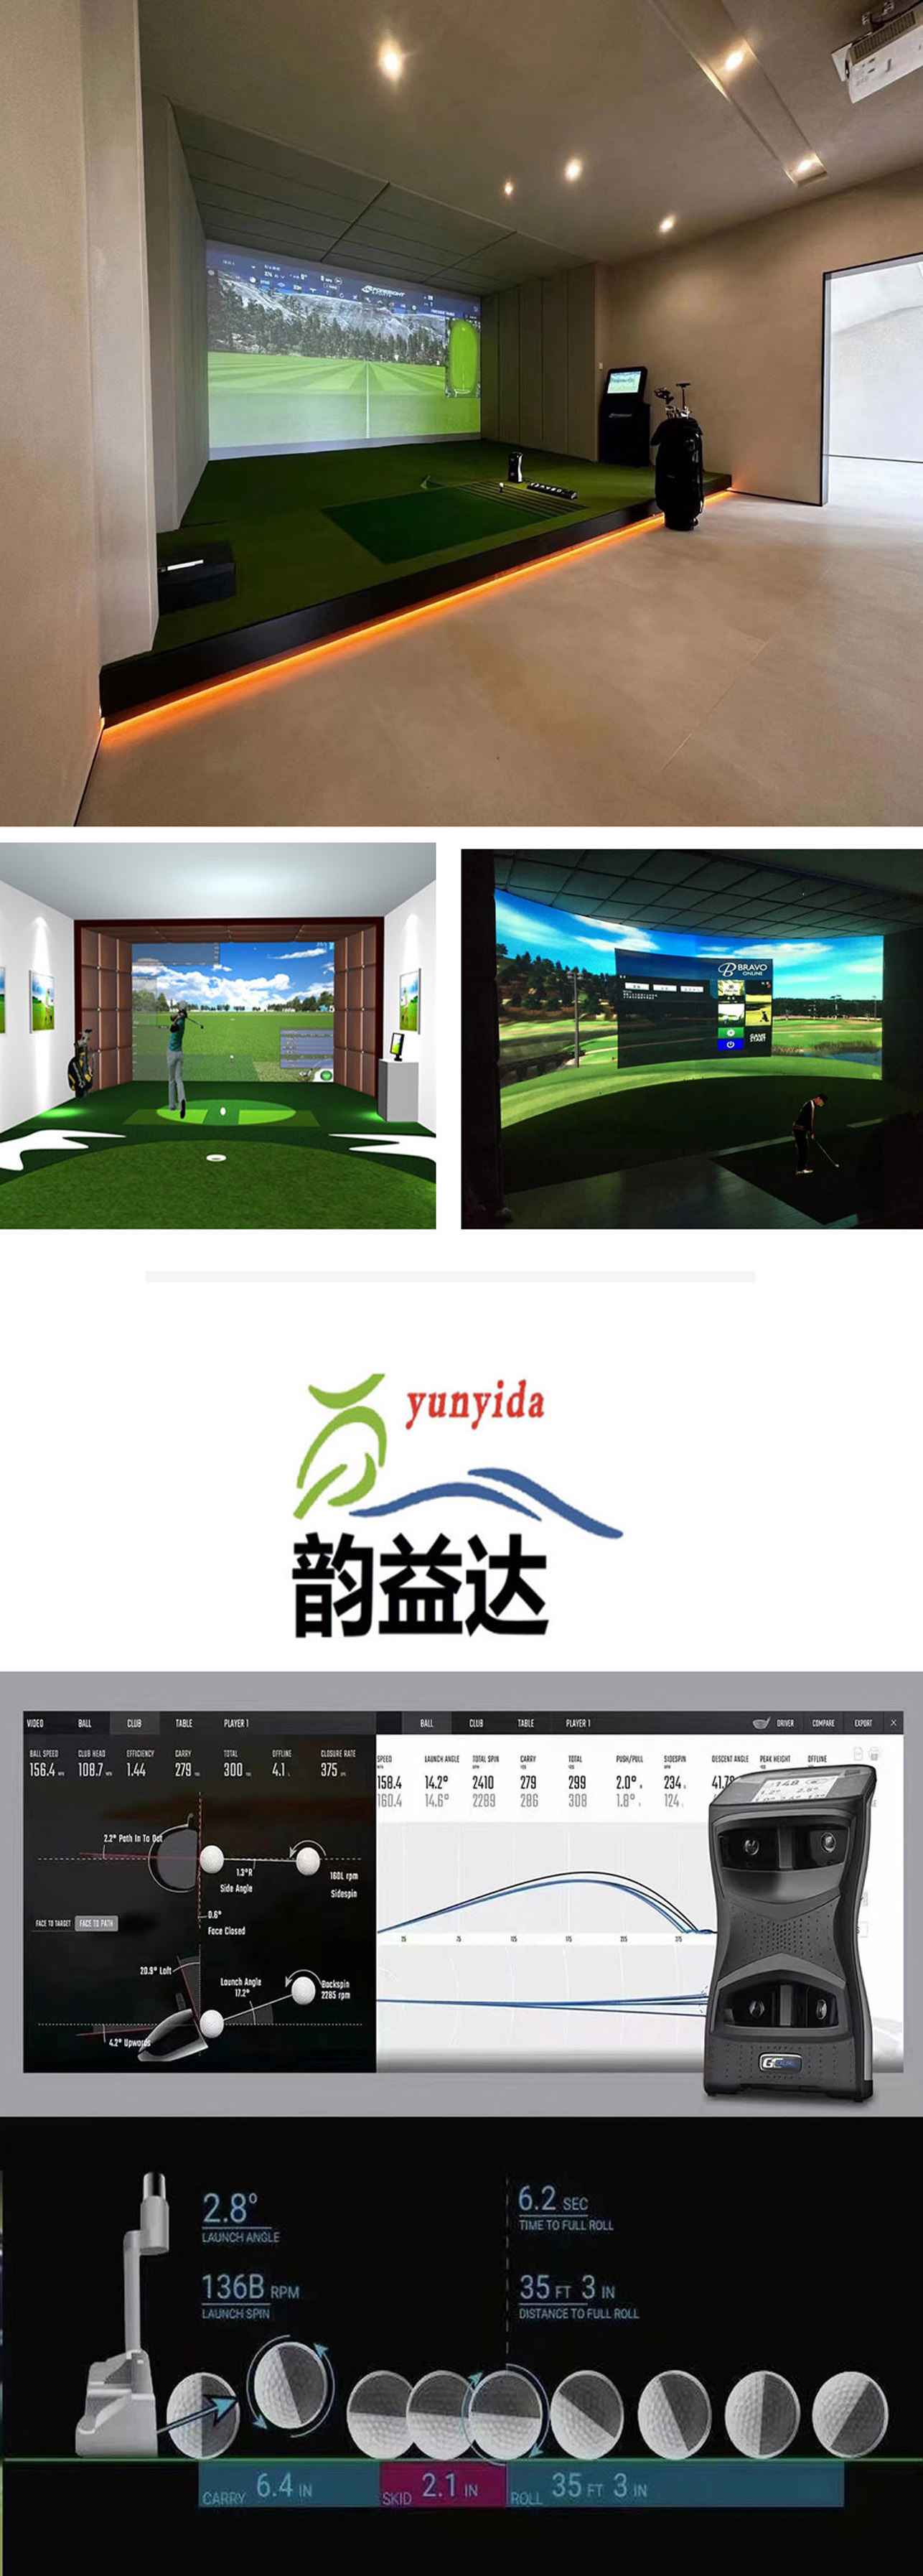 高尔夫模拟室内练习场 2.jpg